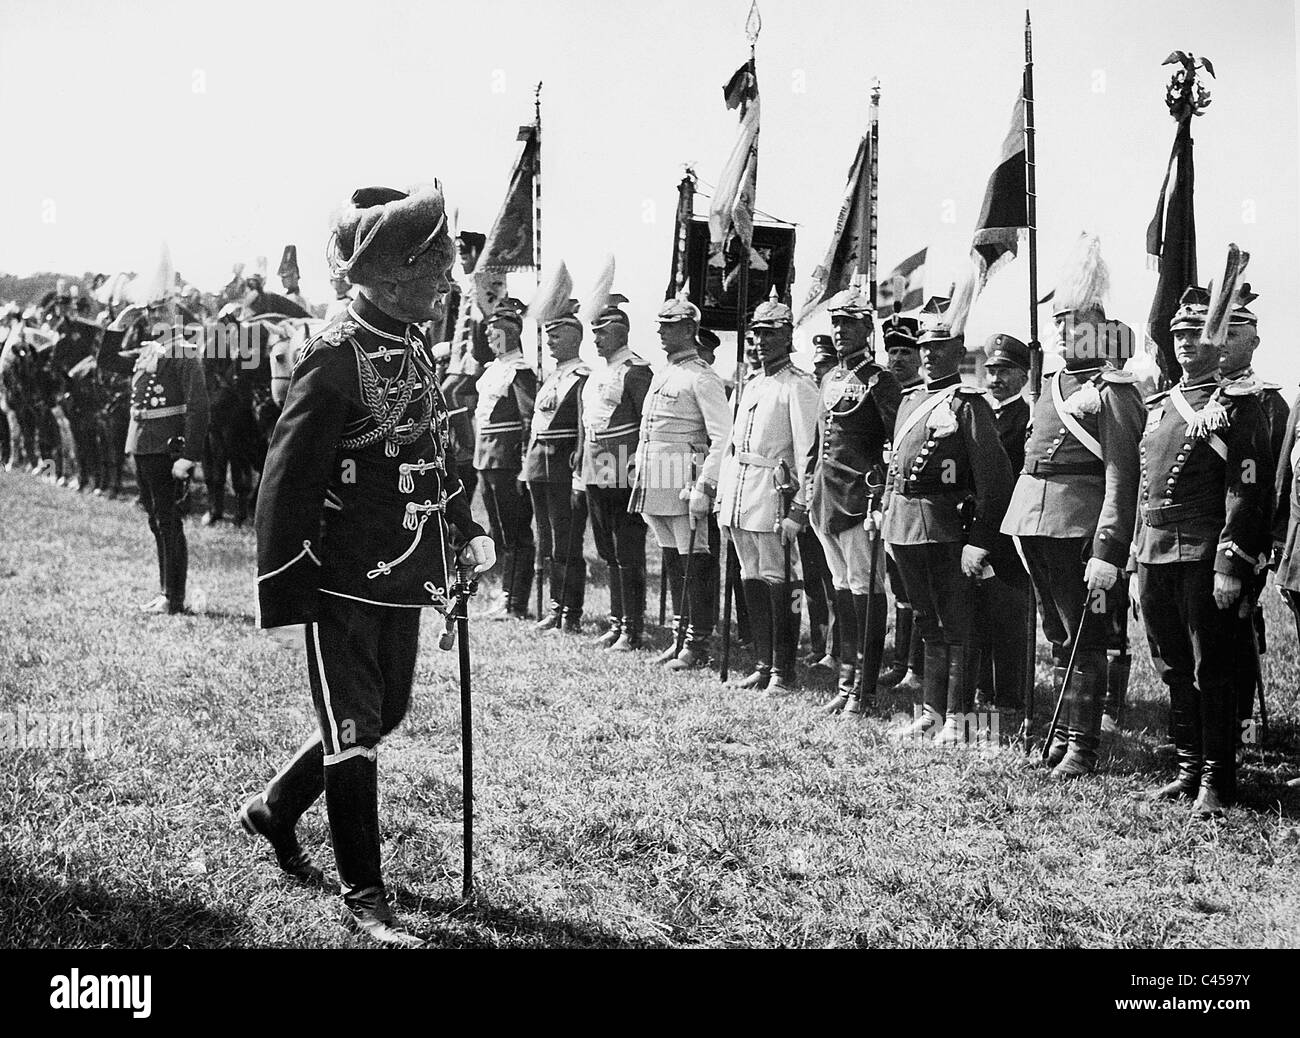 Am 5. August von Mackensen am 5. Waffentag (Kavallerie-Tag) der deutschen Kavallerie, 1935 Stockfoto